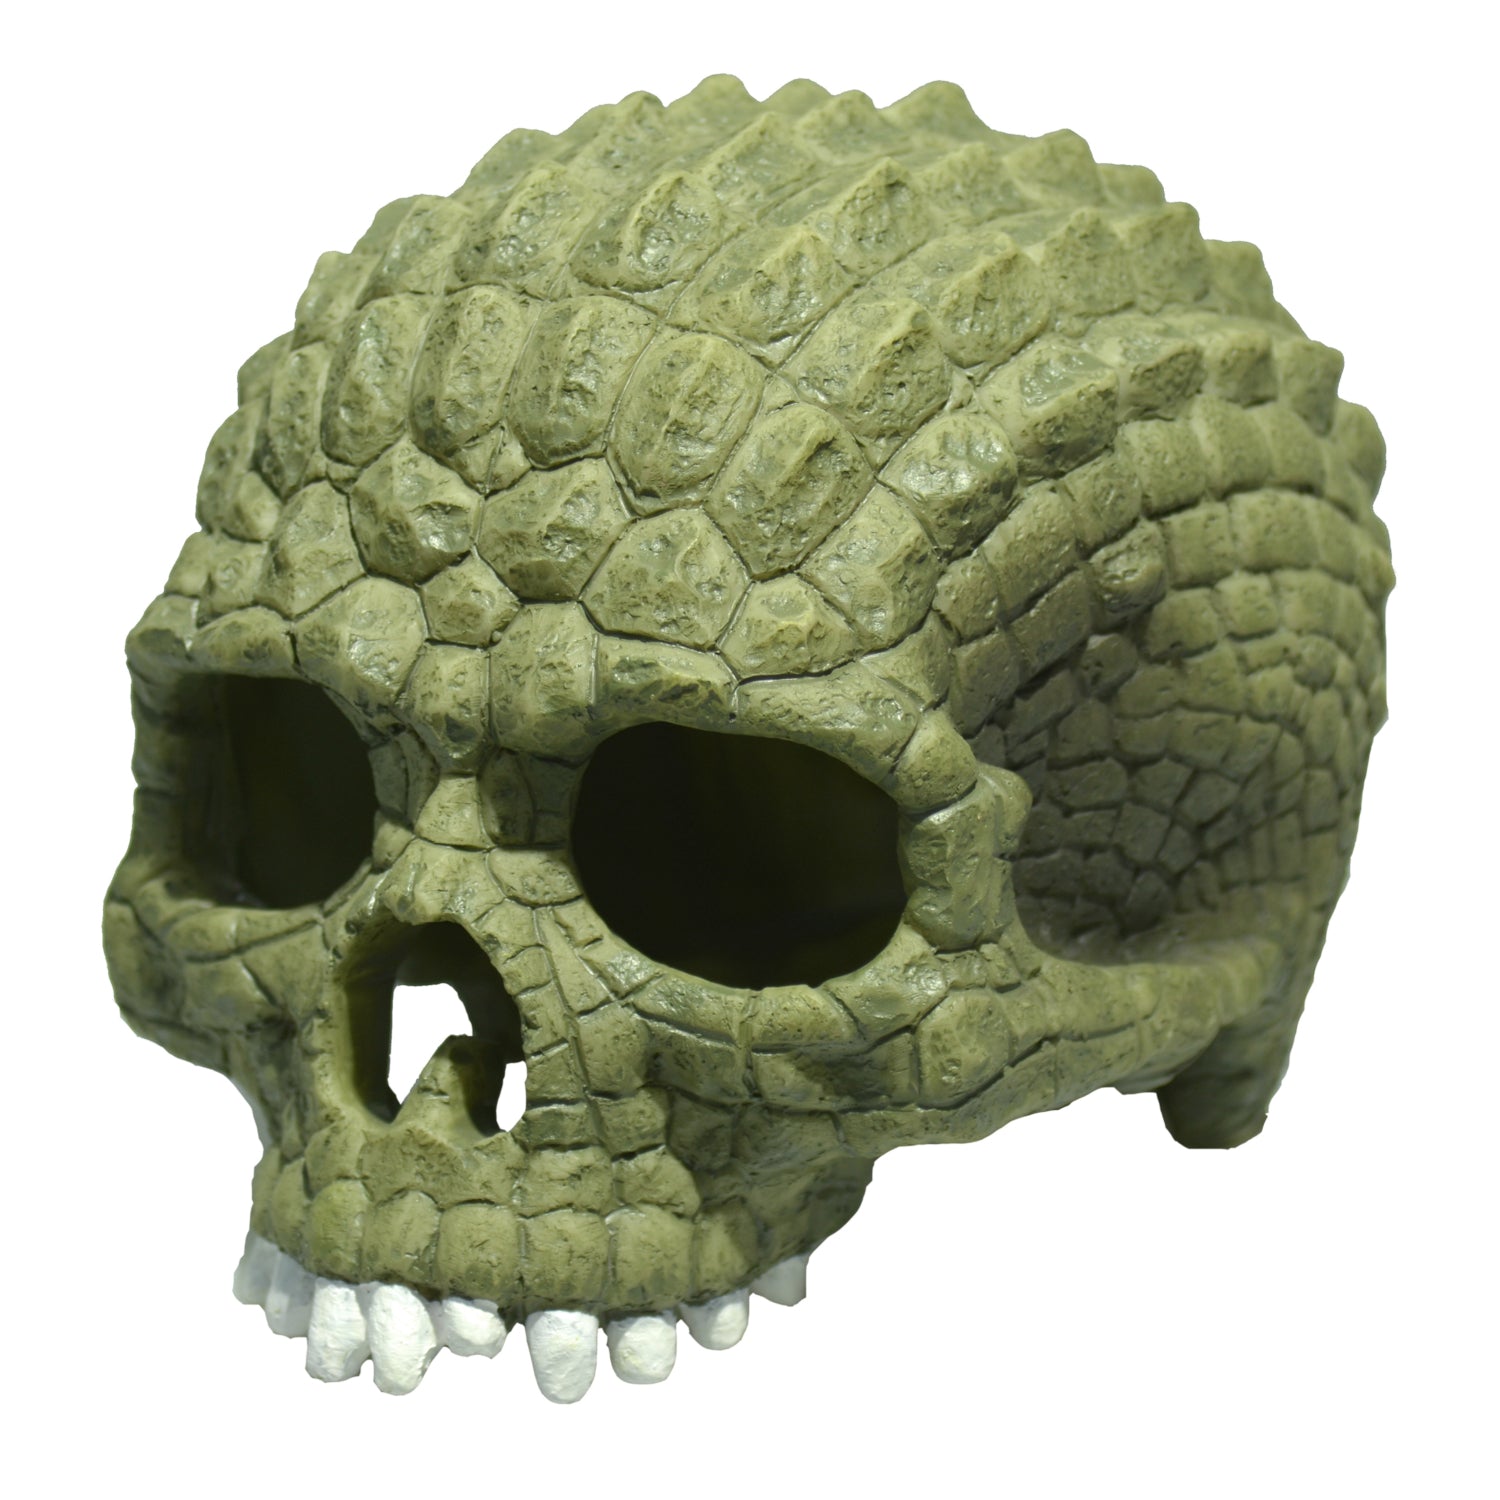 Aqua One Resin Aquarium Ornaments Alligator Green Skull